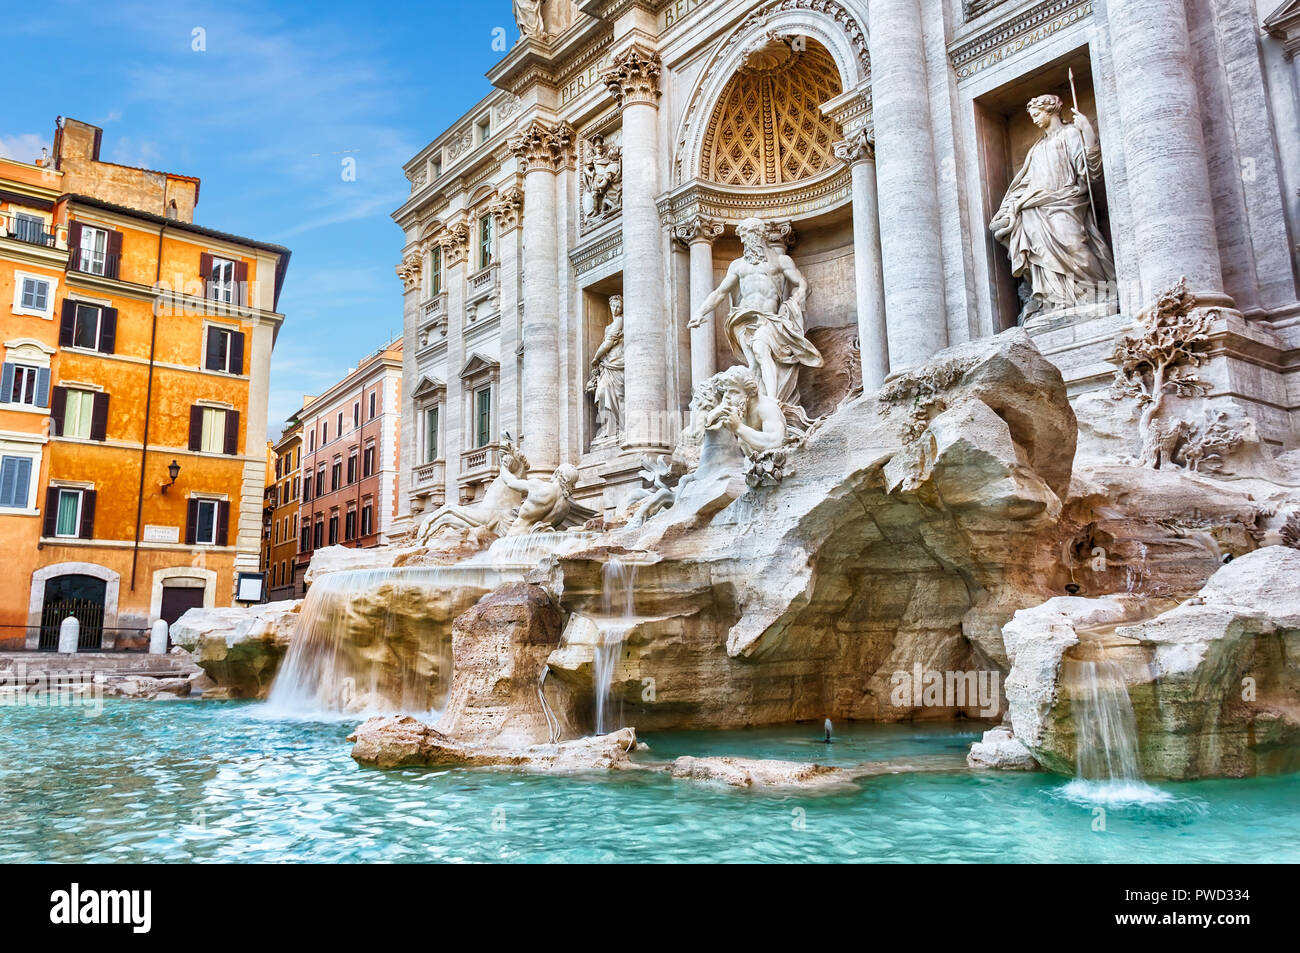 Belle vue sur la Fontaine de Trevi à Rome, pas de personnes Banque D'Images